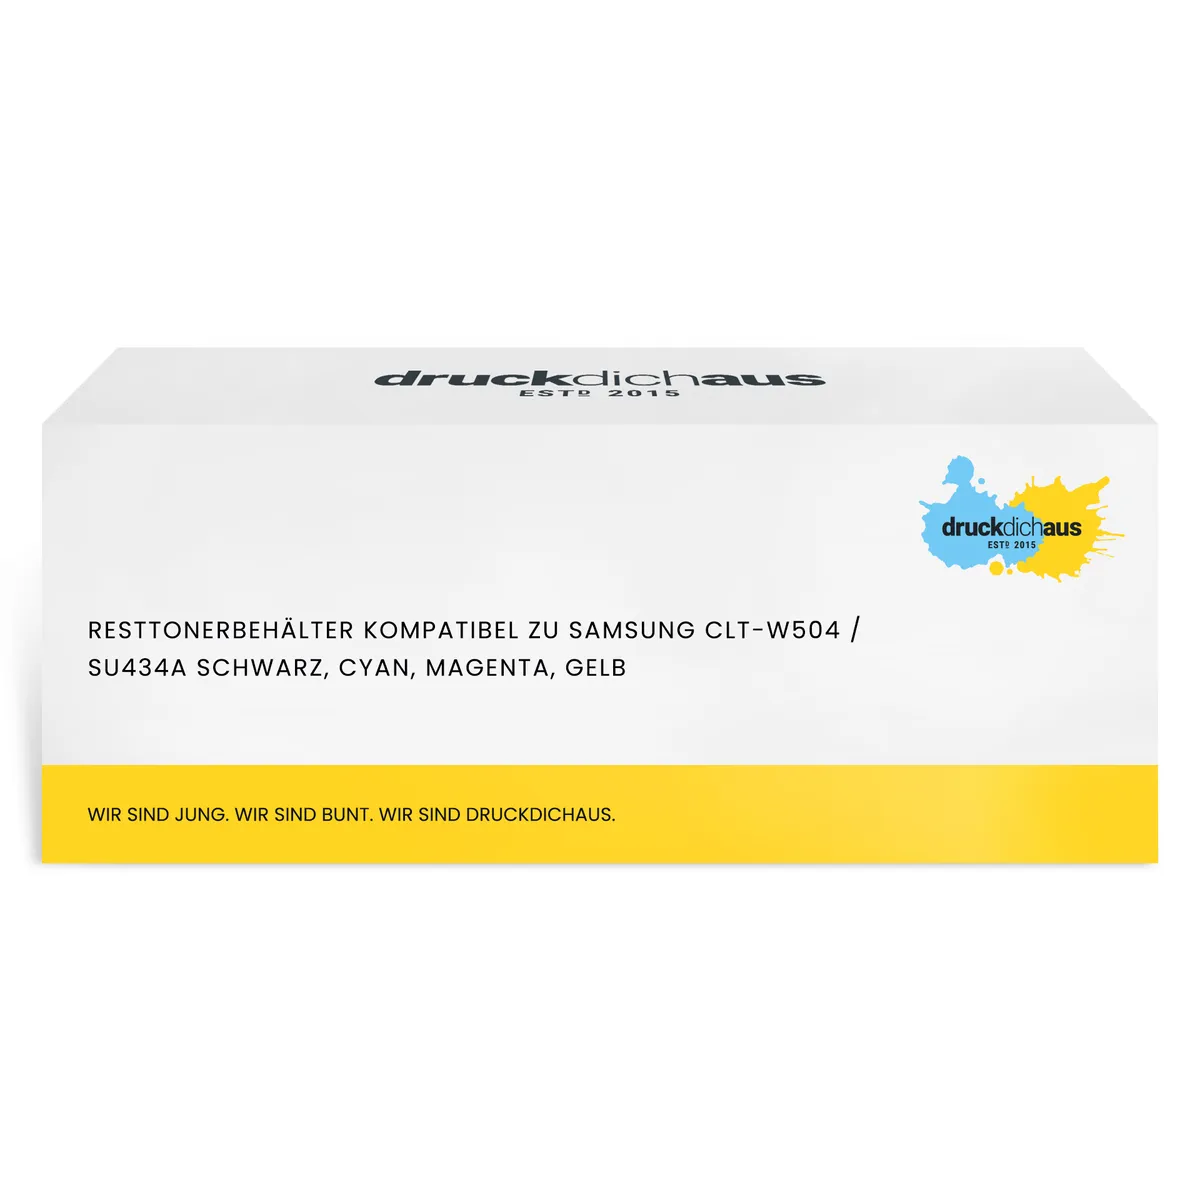 Resttonerbehälter kompatibel zu Samsung CLT-W504 / SU434A schwarz, cyan, magenta, gelb